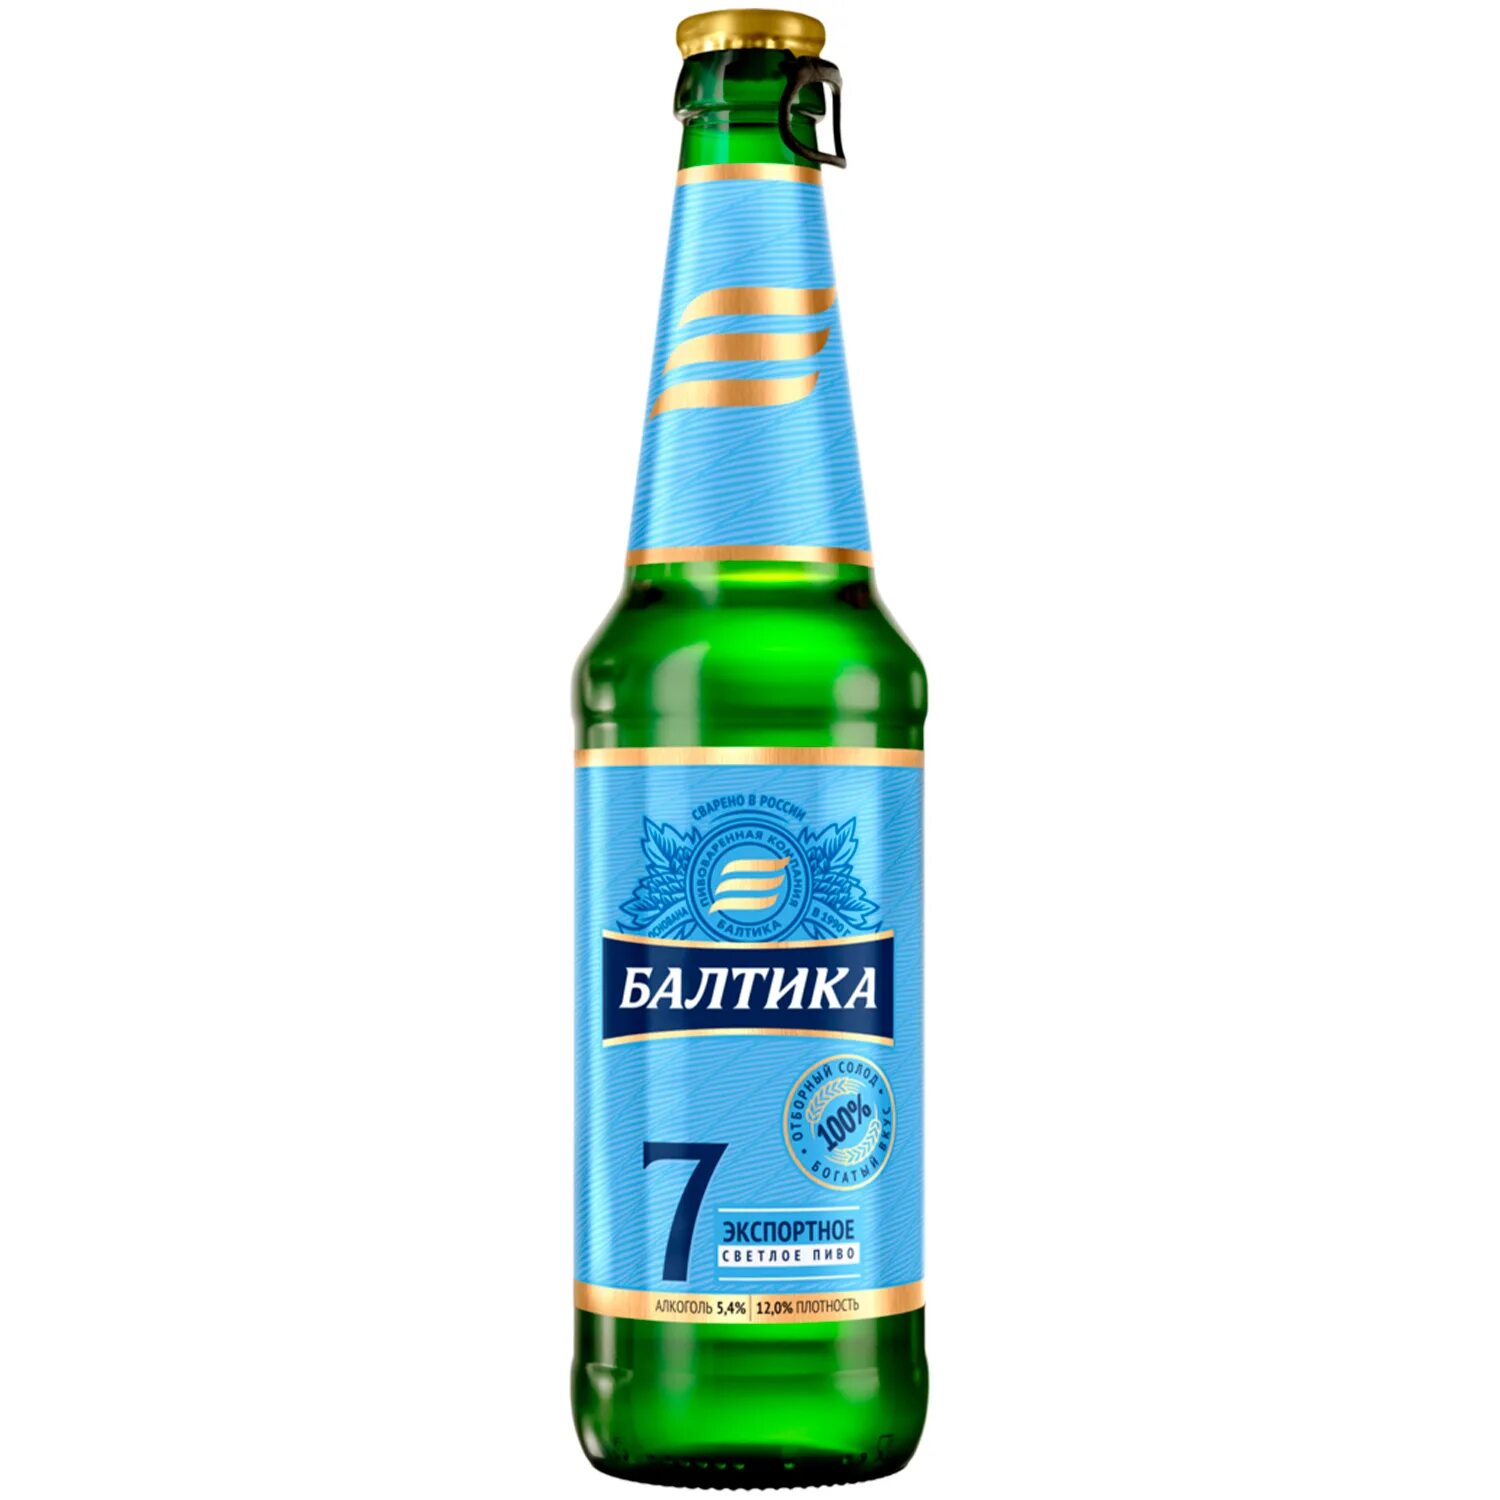 Балтика 7 экспортное. Пиво светлое Балтика №7 Экспортное 0.47 л. Пиво Балтика 7 Экспортное. Балтика №7 Экспортное стекло 0,47 л/20. Пиво Балтика Экспортное 7 светлое 0.45л.